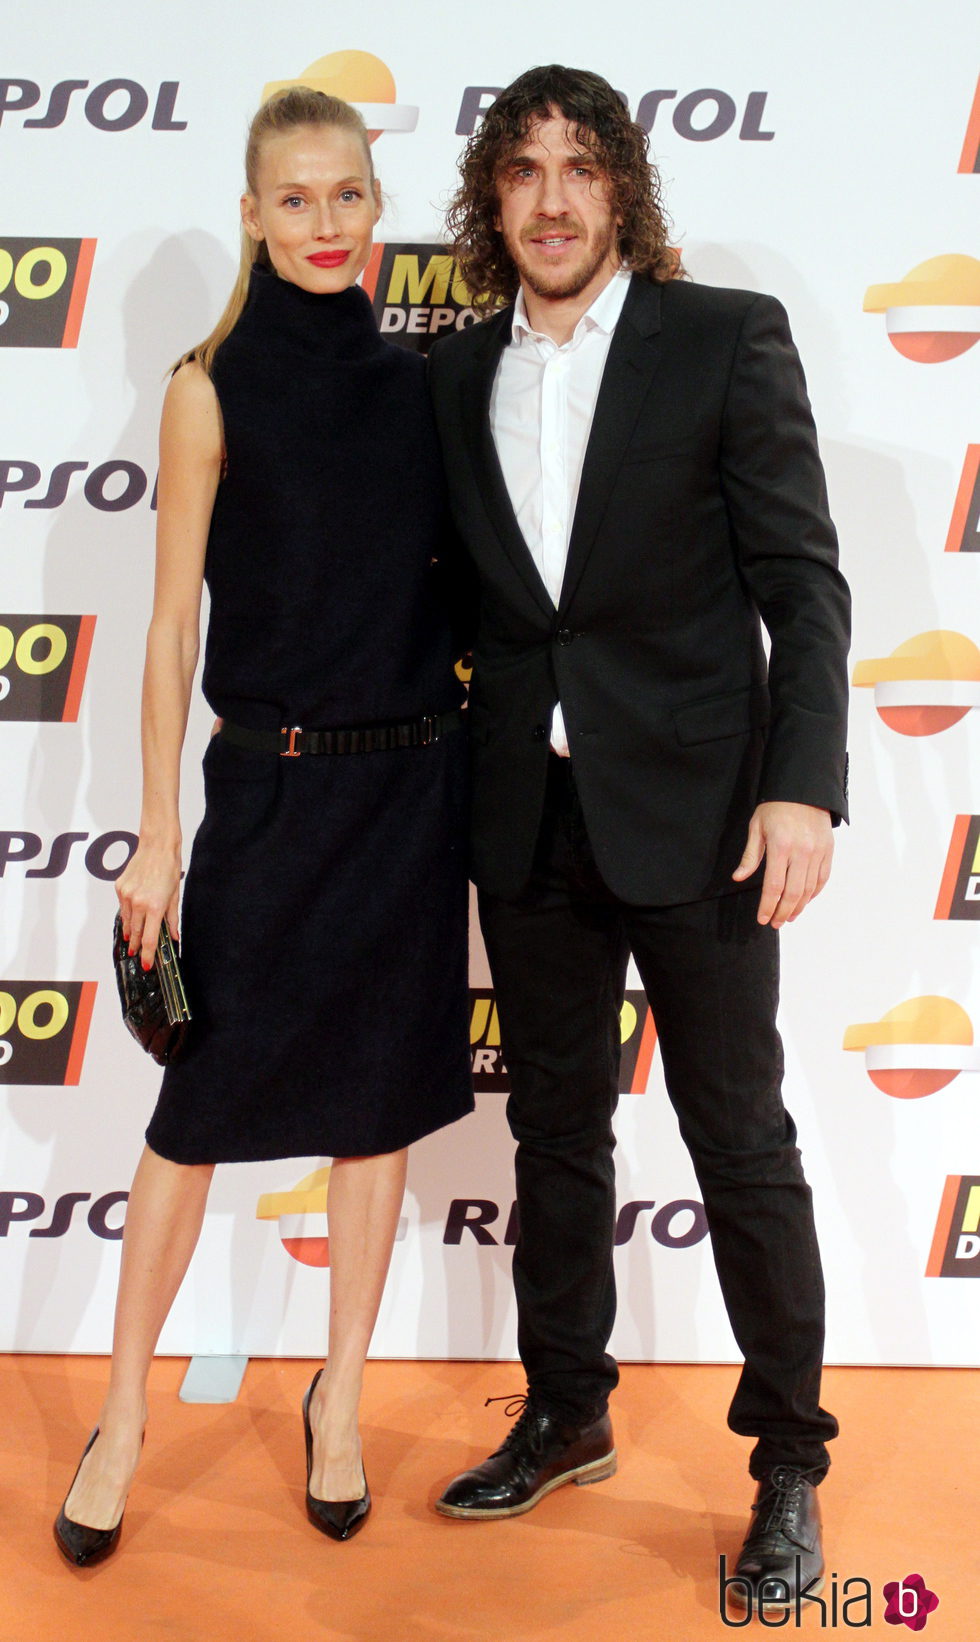 Vanesa Lorenzo y Carles Puyol en la gala Mundo Deportivo 2015